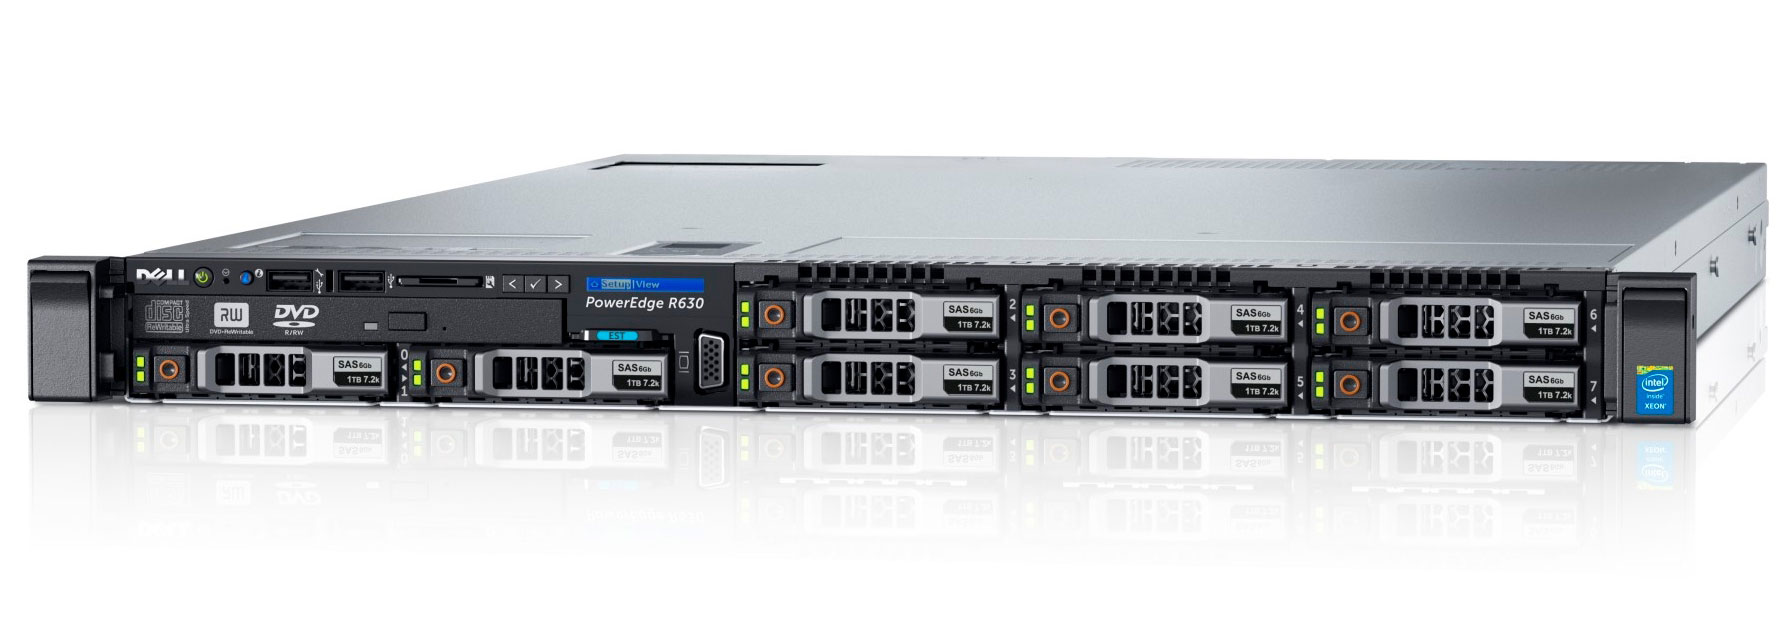 Подробное фото Сервер DELL PowerEdge R630 2*Xeon E5-2667v4 192Gb 2133P DDR4 8x noHDD 2.5", SAS RAID Perc H730, 1024Mb, DVD, 2*PSU